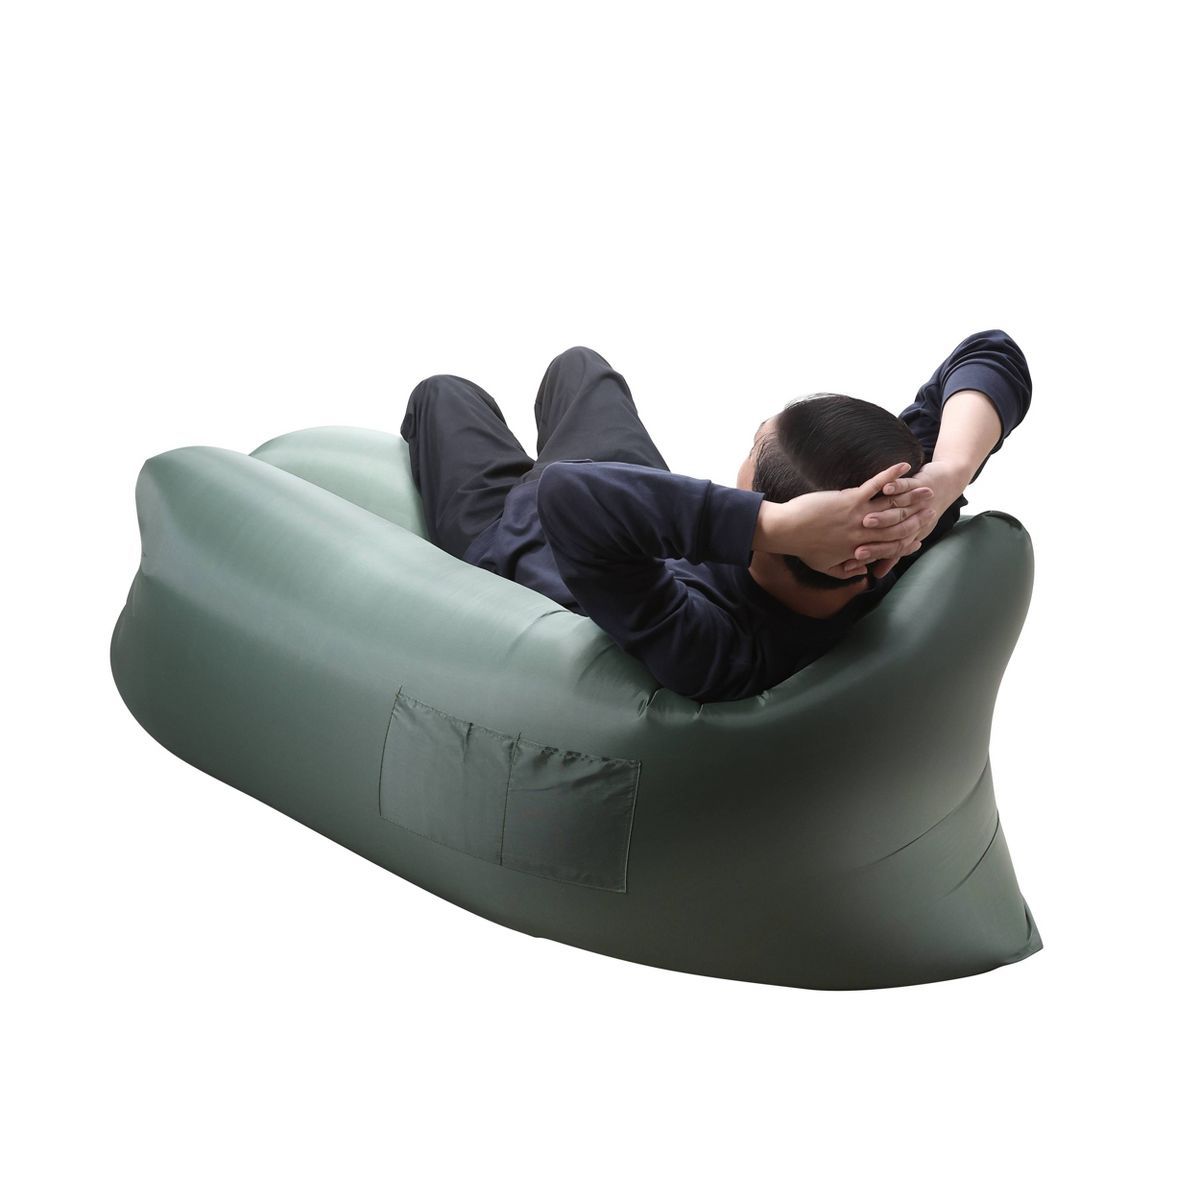 Outdoor Inflatable Hammock | Target